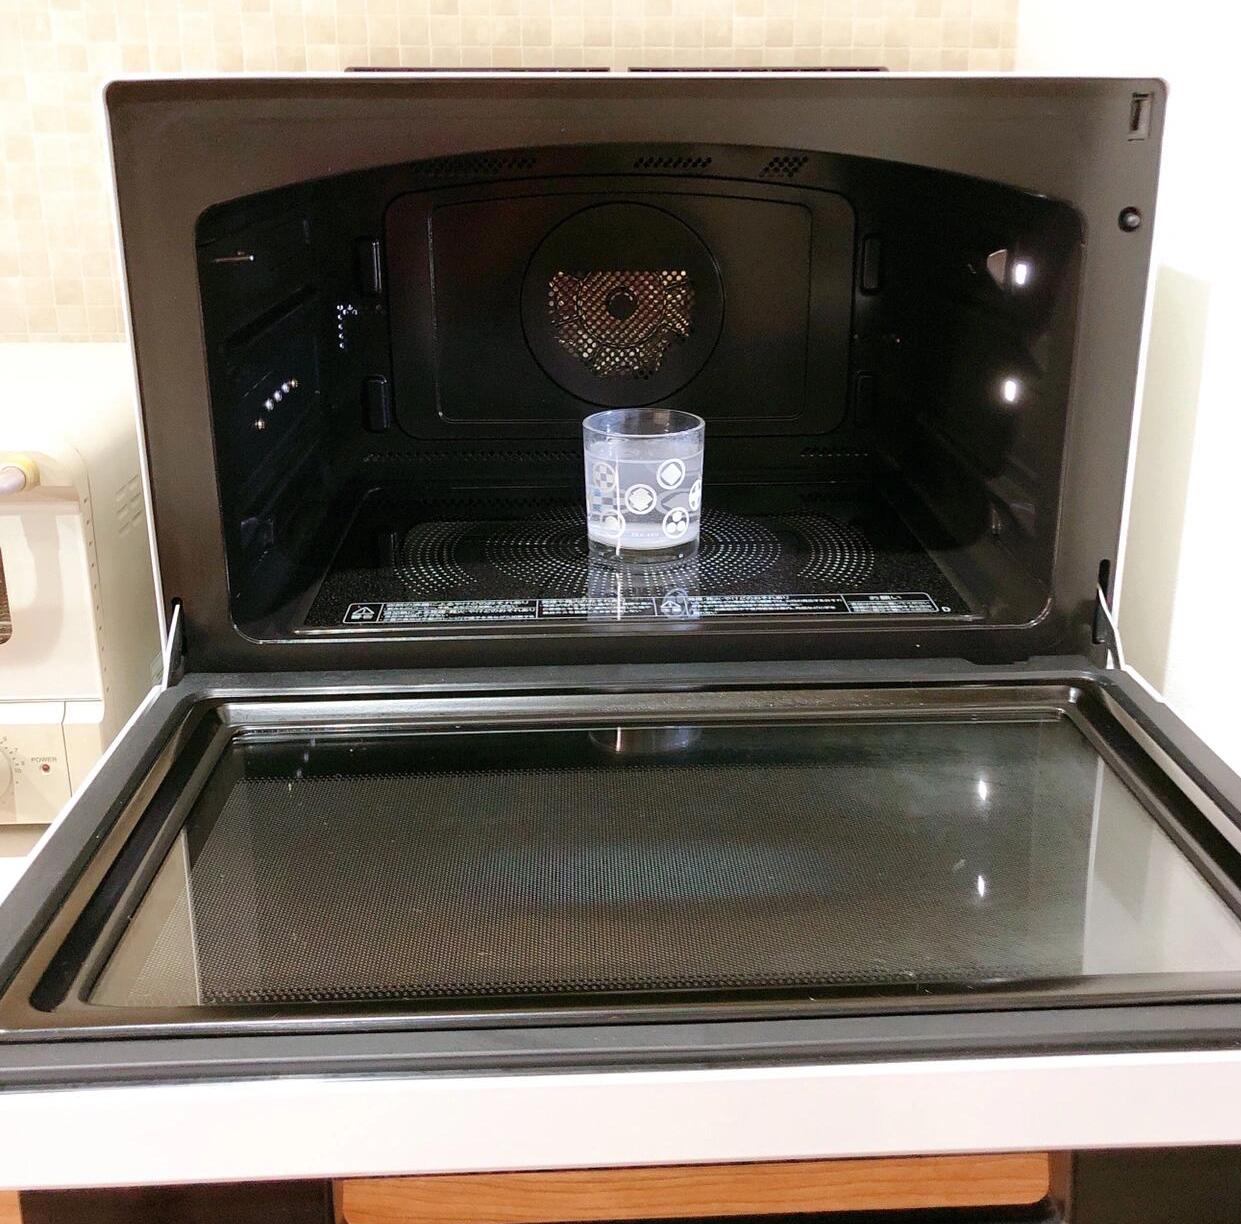 4 thiết bị nhà bếp quen thuộc này thực sự rất bẩn nhưng không được rửa thường xuyên- Ảnh 3.